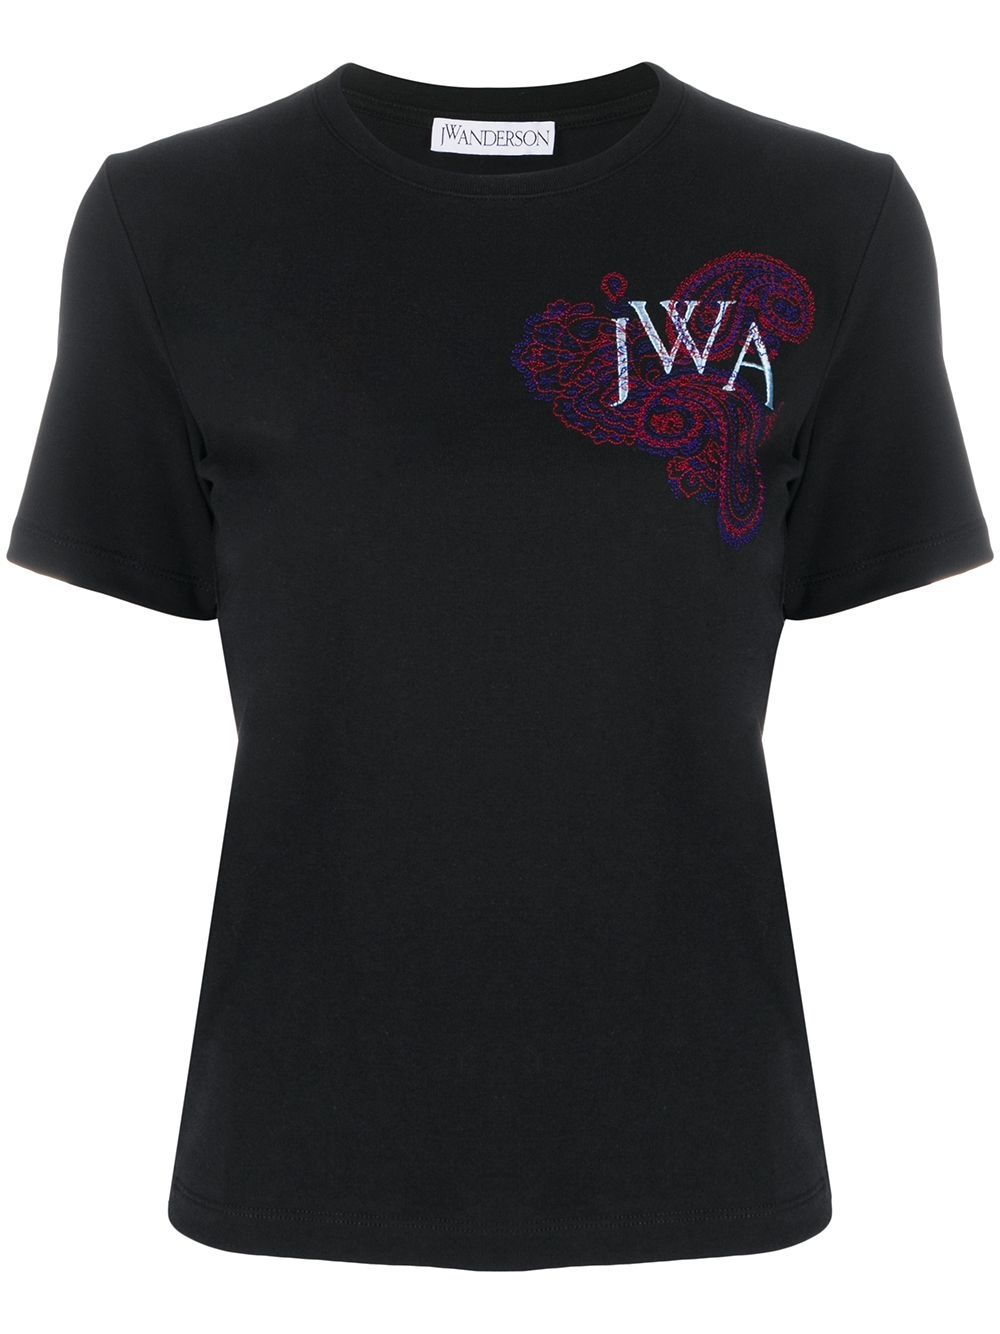 фото Jw anderson футболка с вышитым логотипом